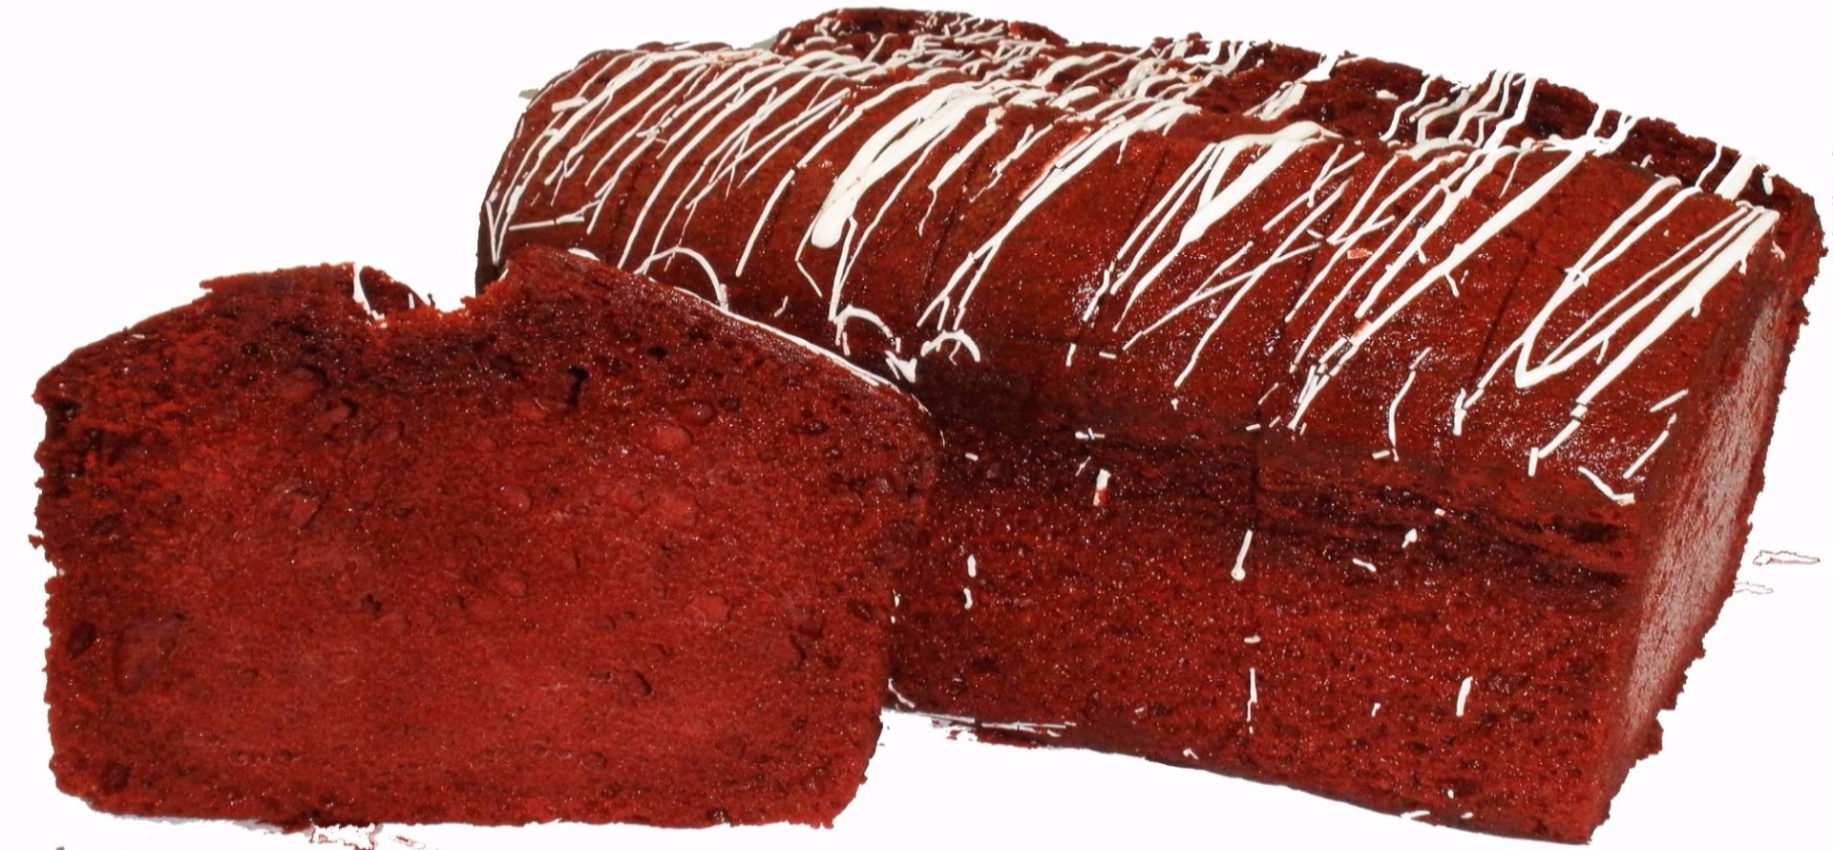 Red Velvet Loaf